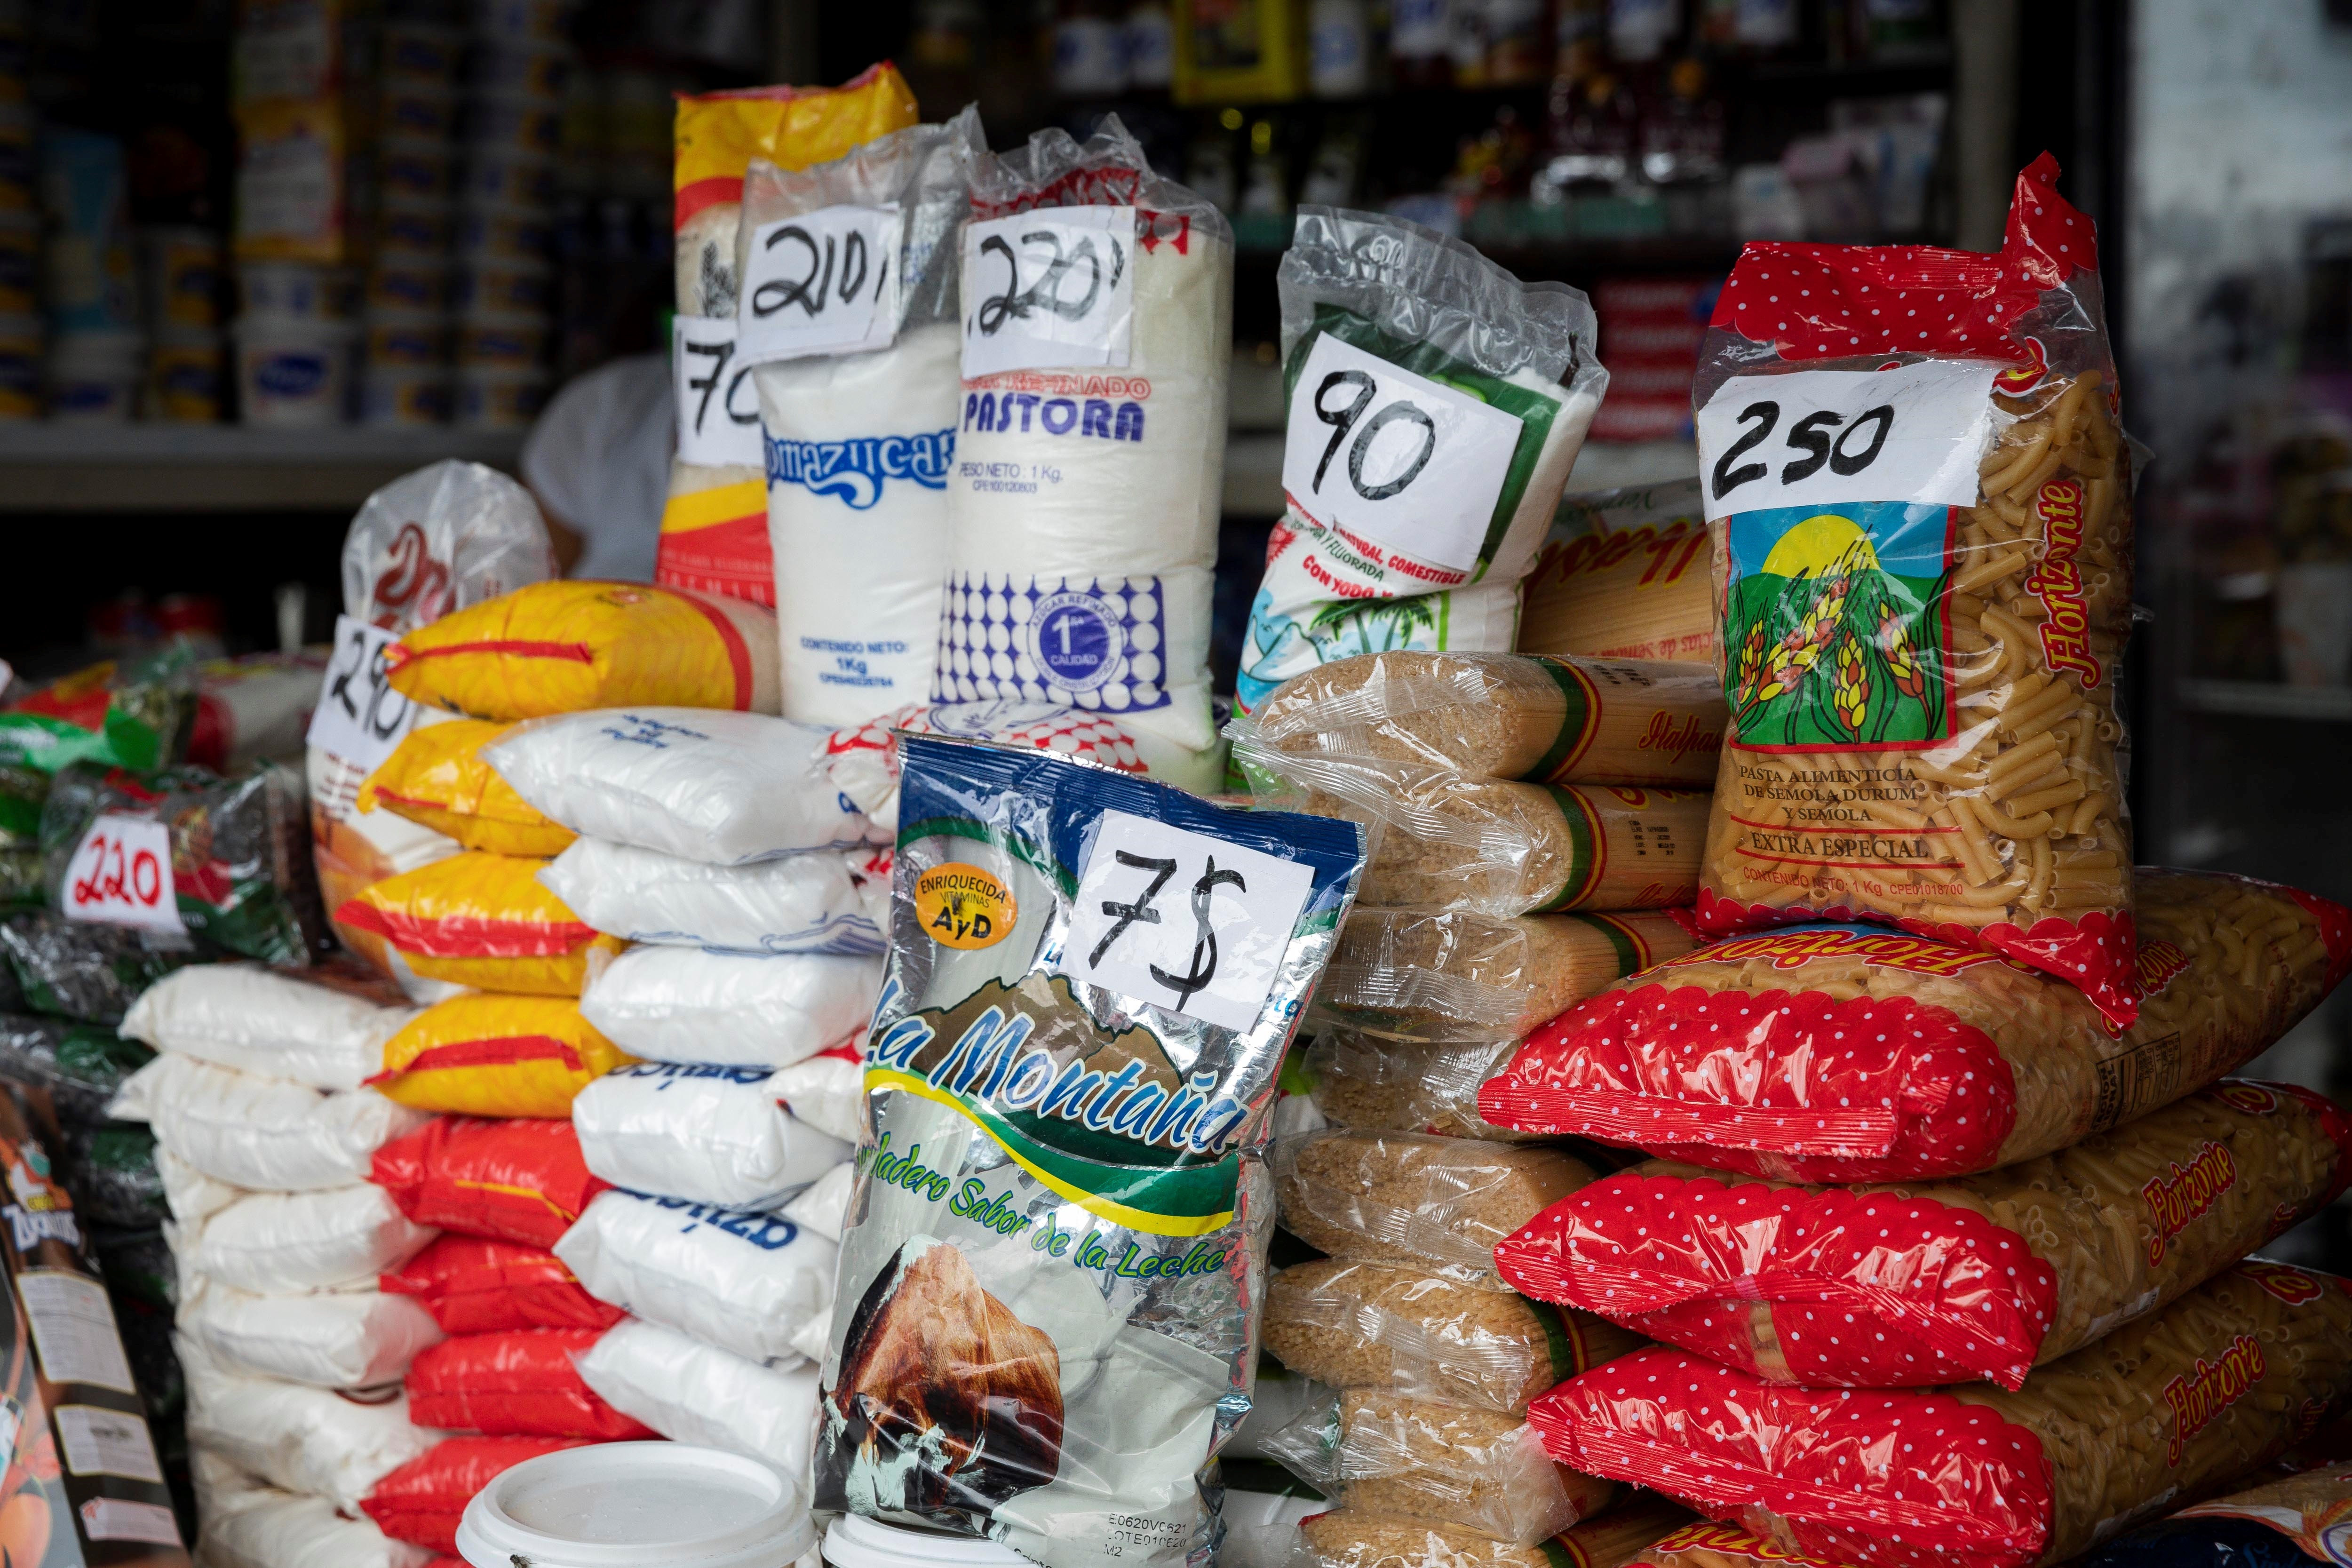 En La Guaira, a los venezolanos no les alcanza sus sueldos de miseria para hacer mercado (IMAGEN)